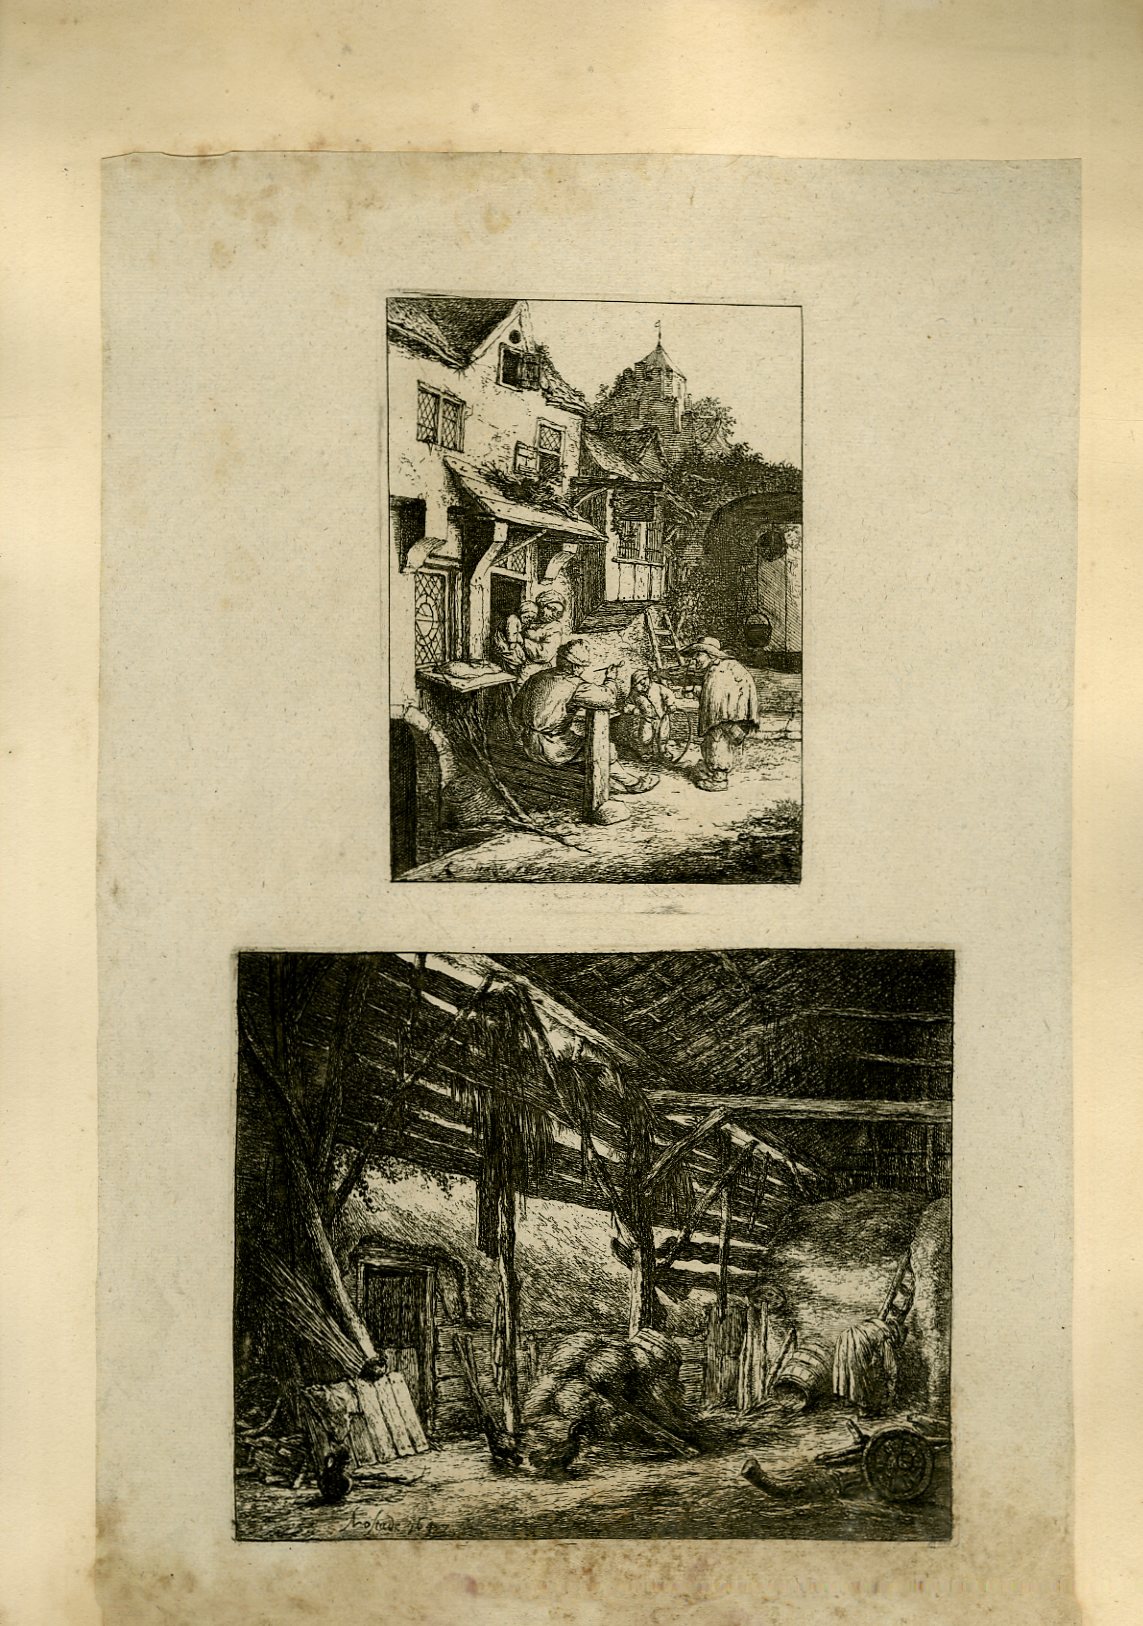 Planche illustre de 3 gravures originales en noir et blanc : Une scne de village, avec 5 villageois devant une entre de commerce - Intrieur d'une grange remplie de pailles et de divers outils de paysans, avec 2 poules.